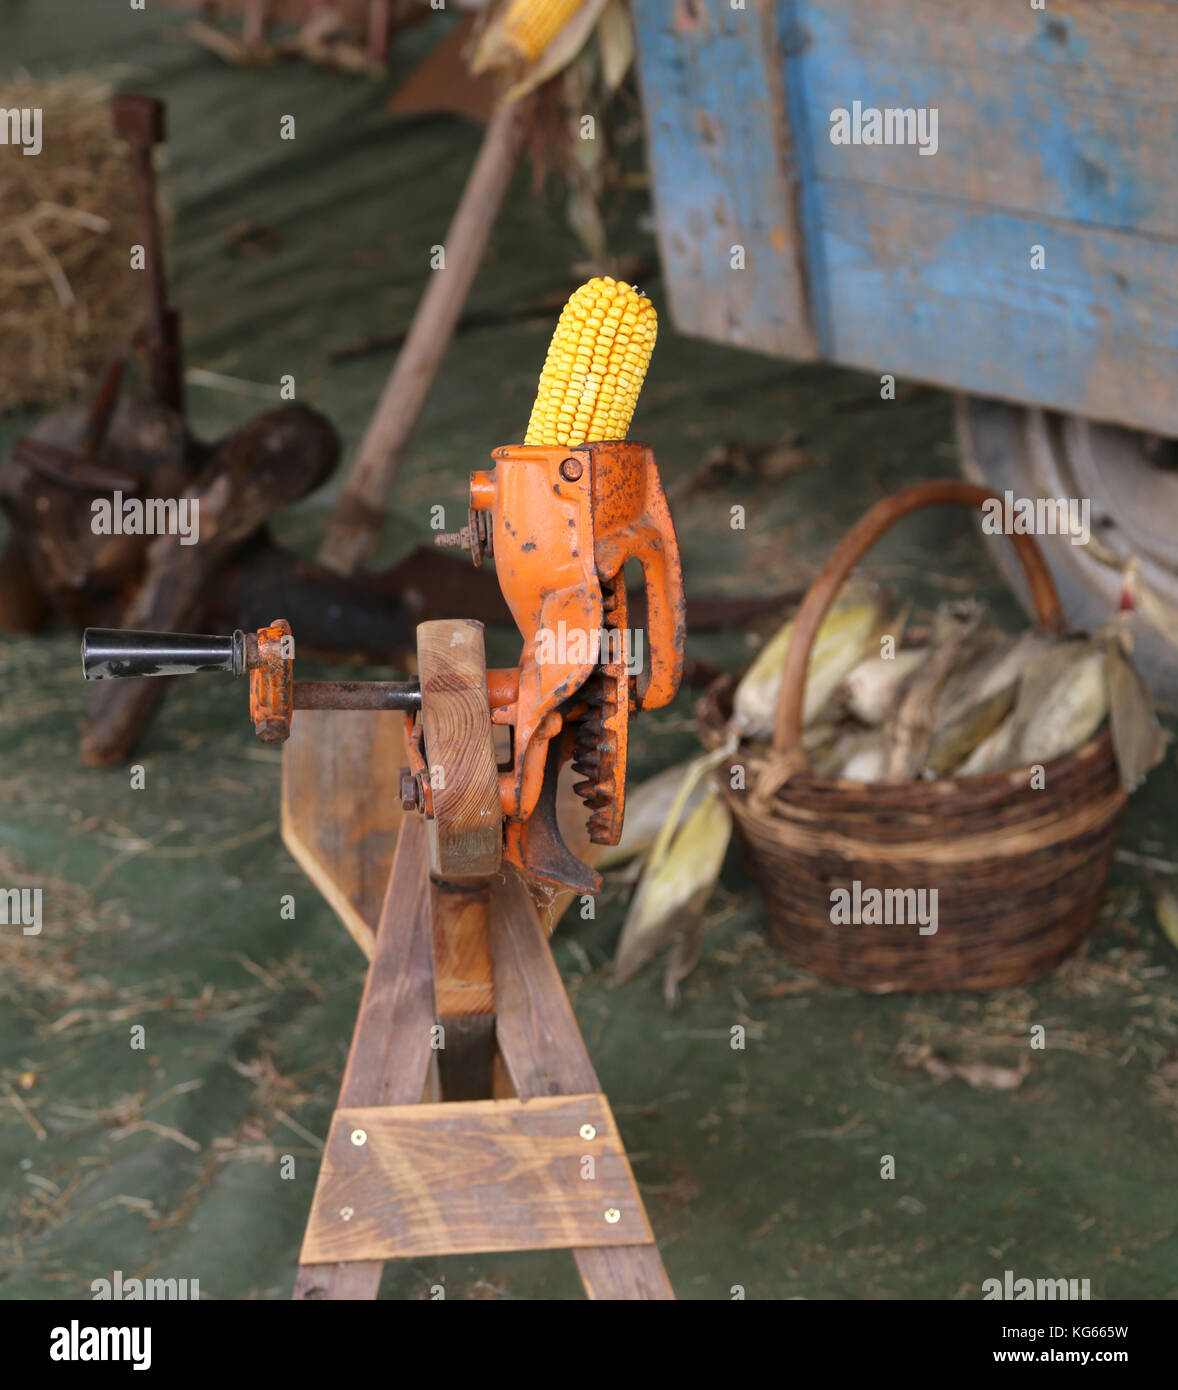 Gelbe Maiskolben in einer alten Maschine die Samen irgendwann genannt Shredder zu entfernen. Stockfoto